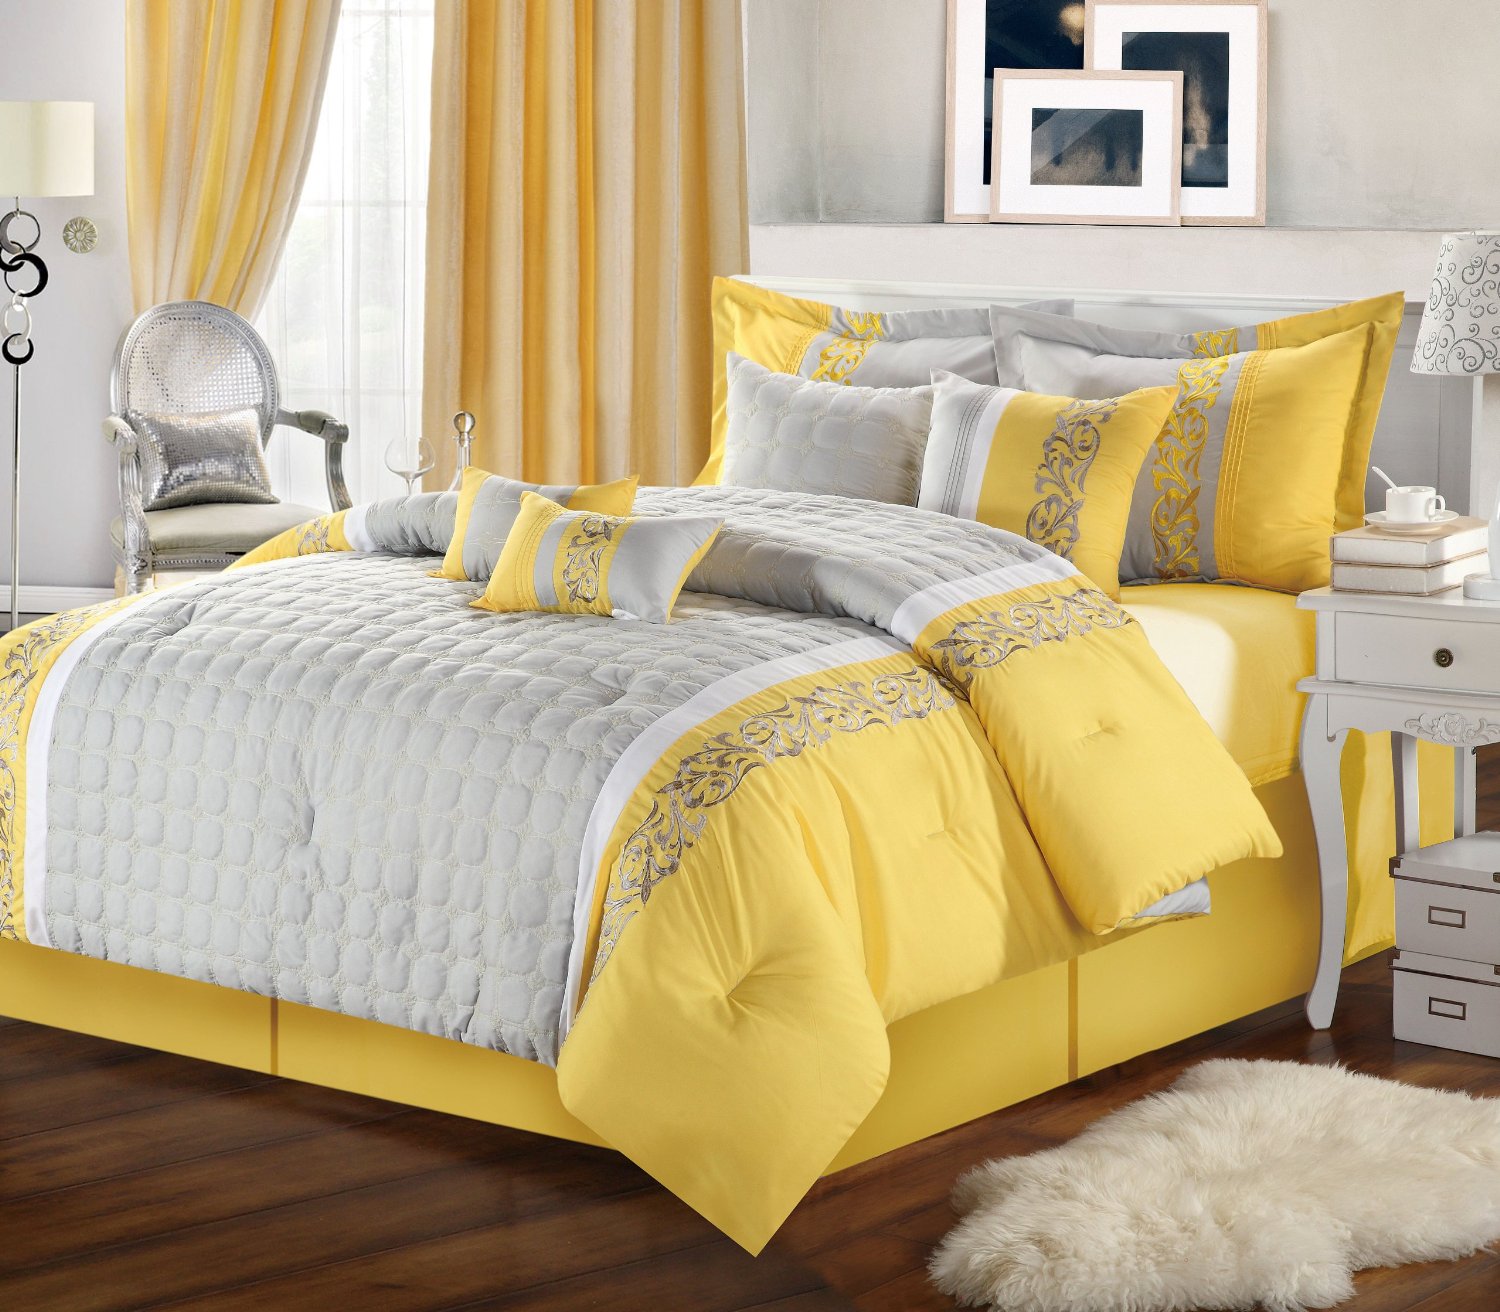 Коричневый пол в серо-желтой спальне